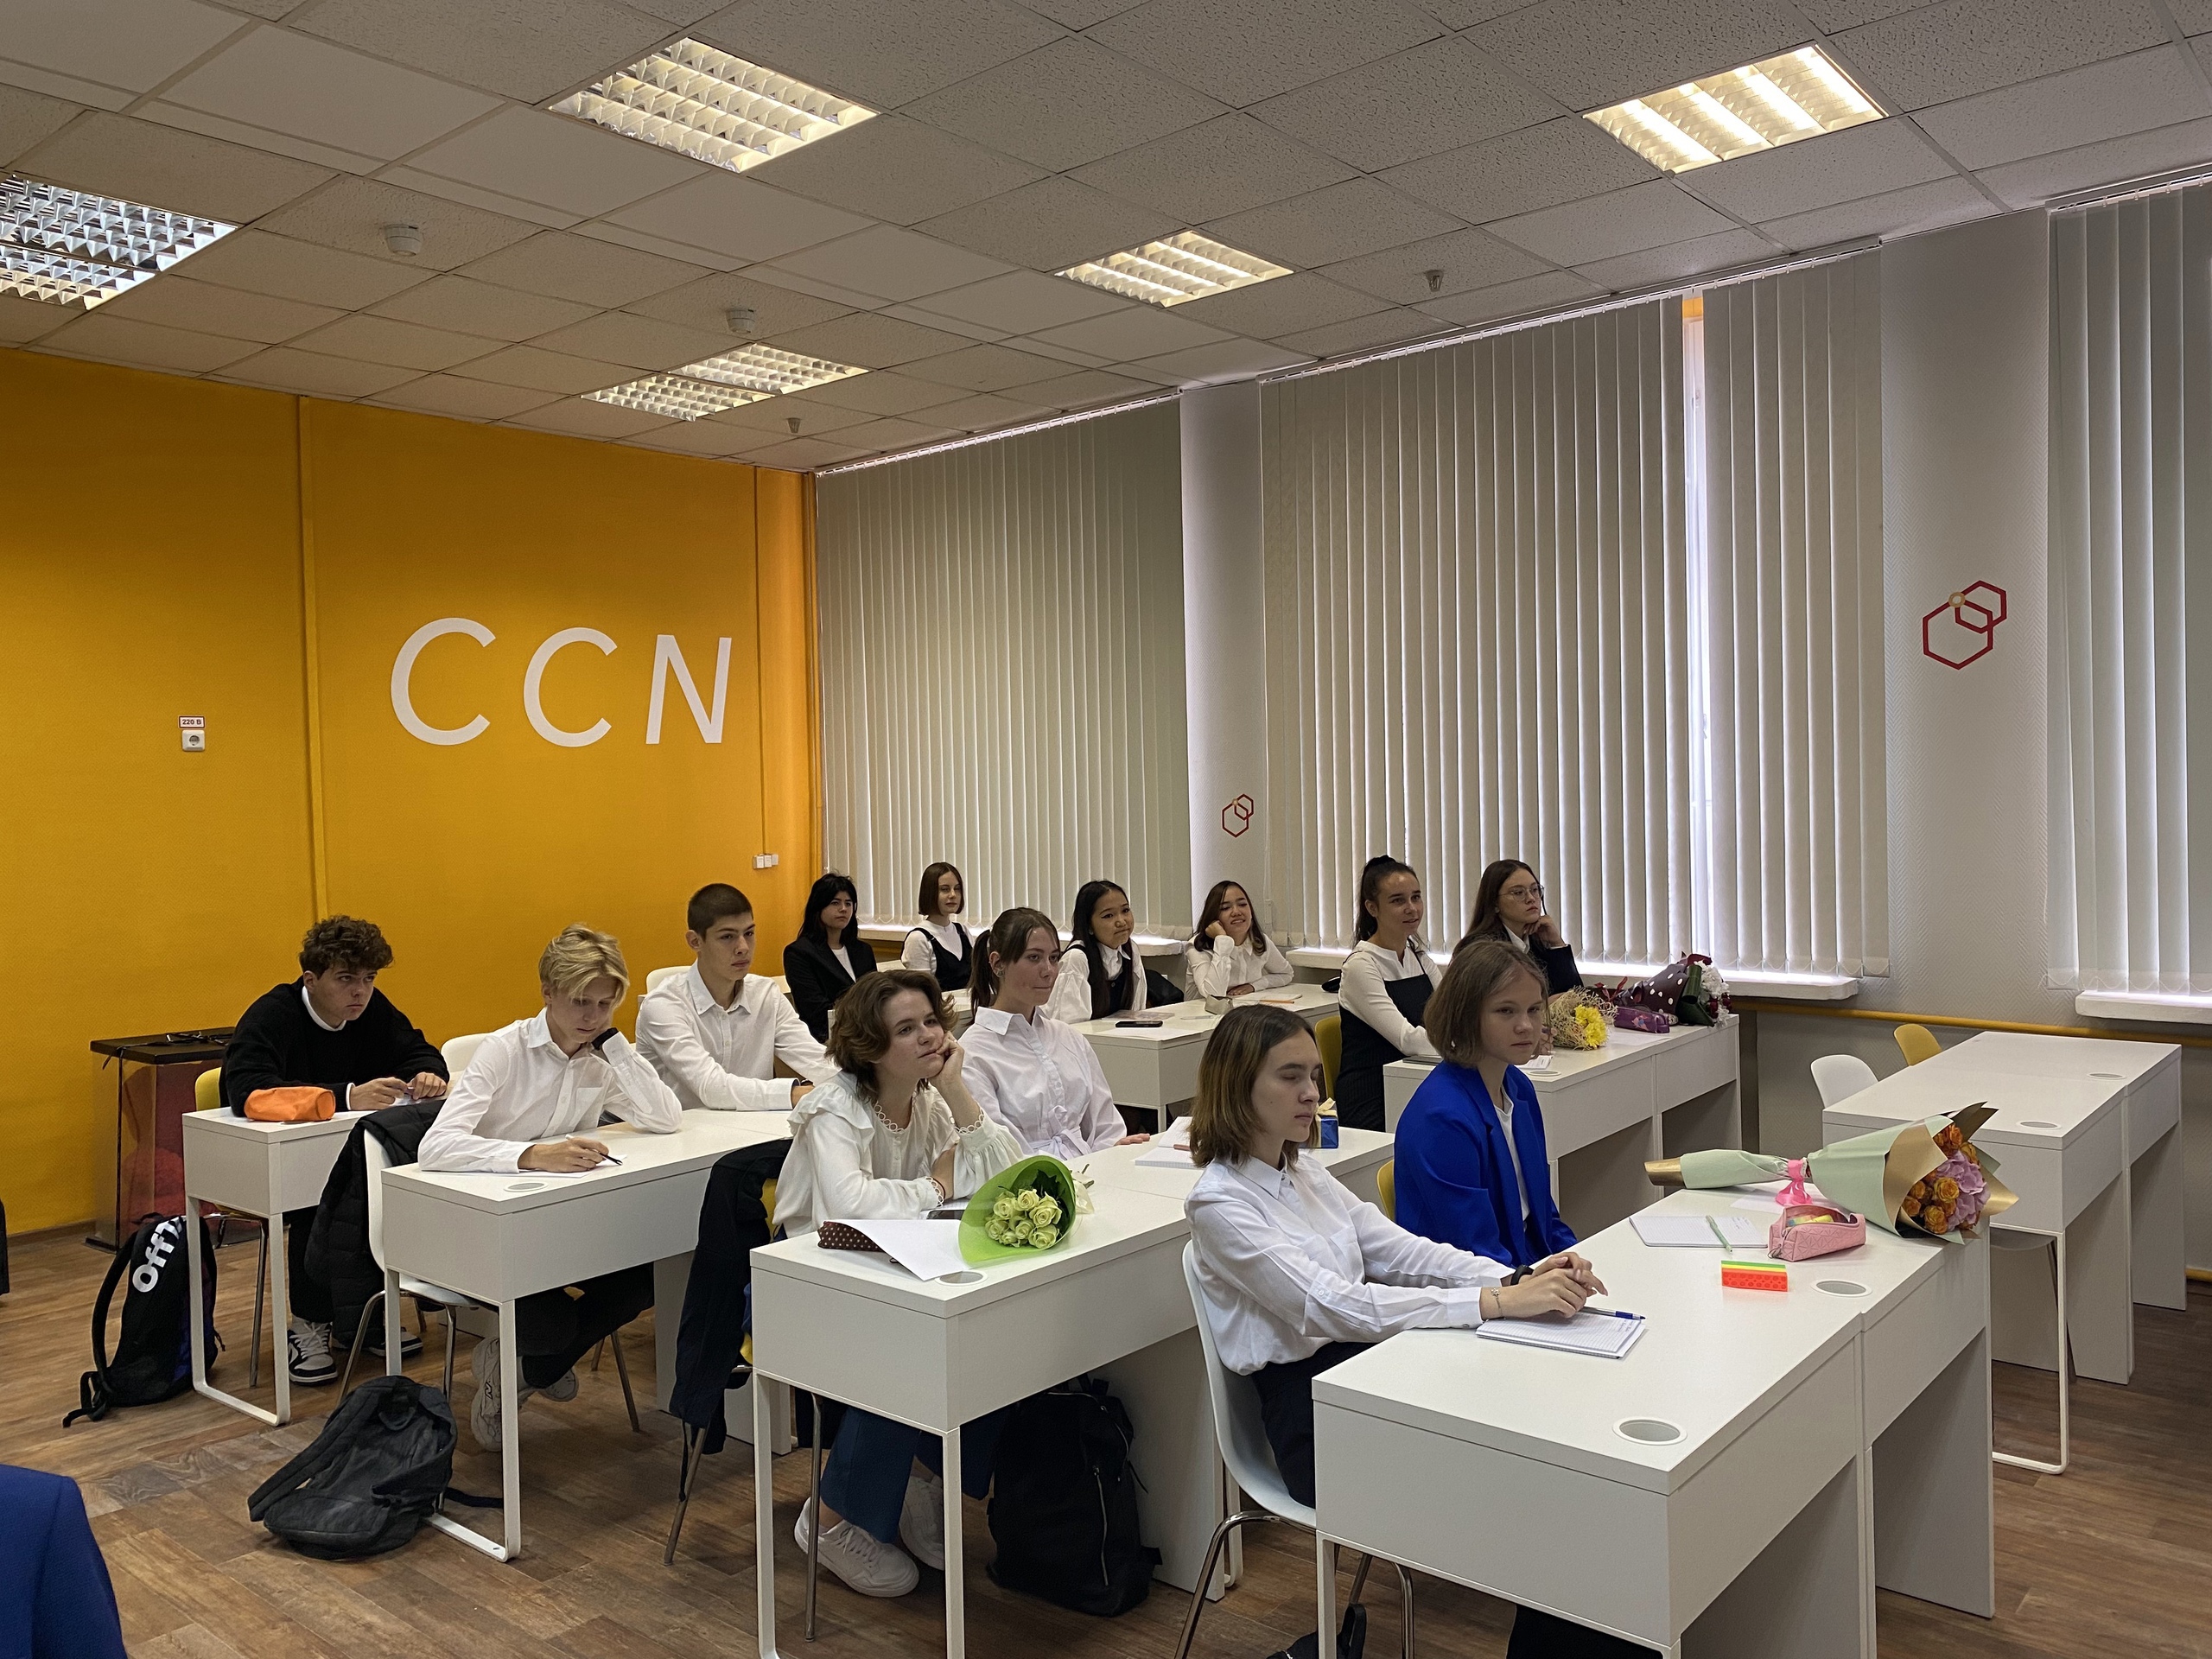 «CCN» – Профильный языковой класс в Санкт-Петербурге, фото 8